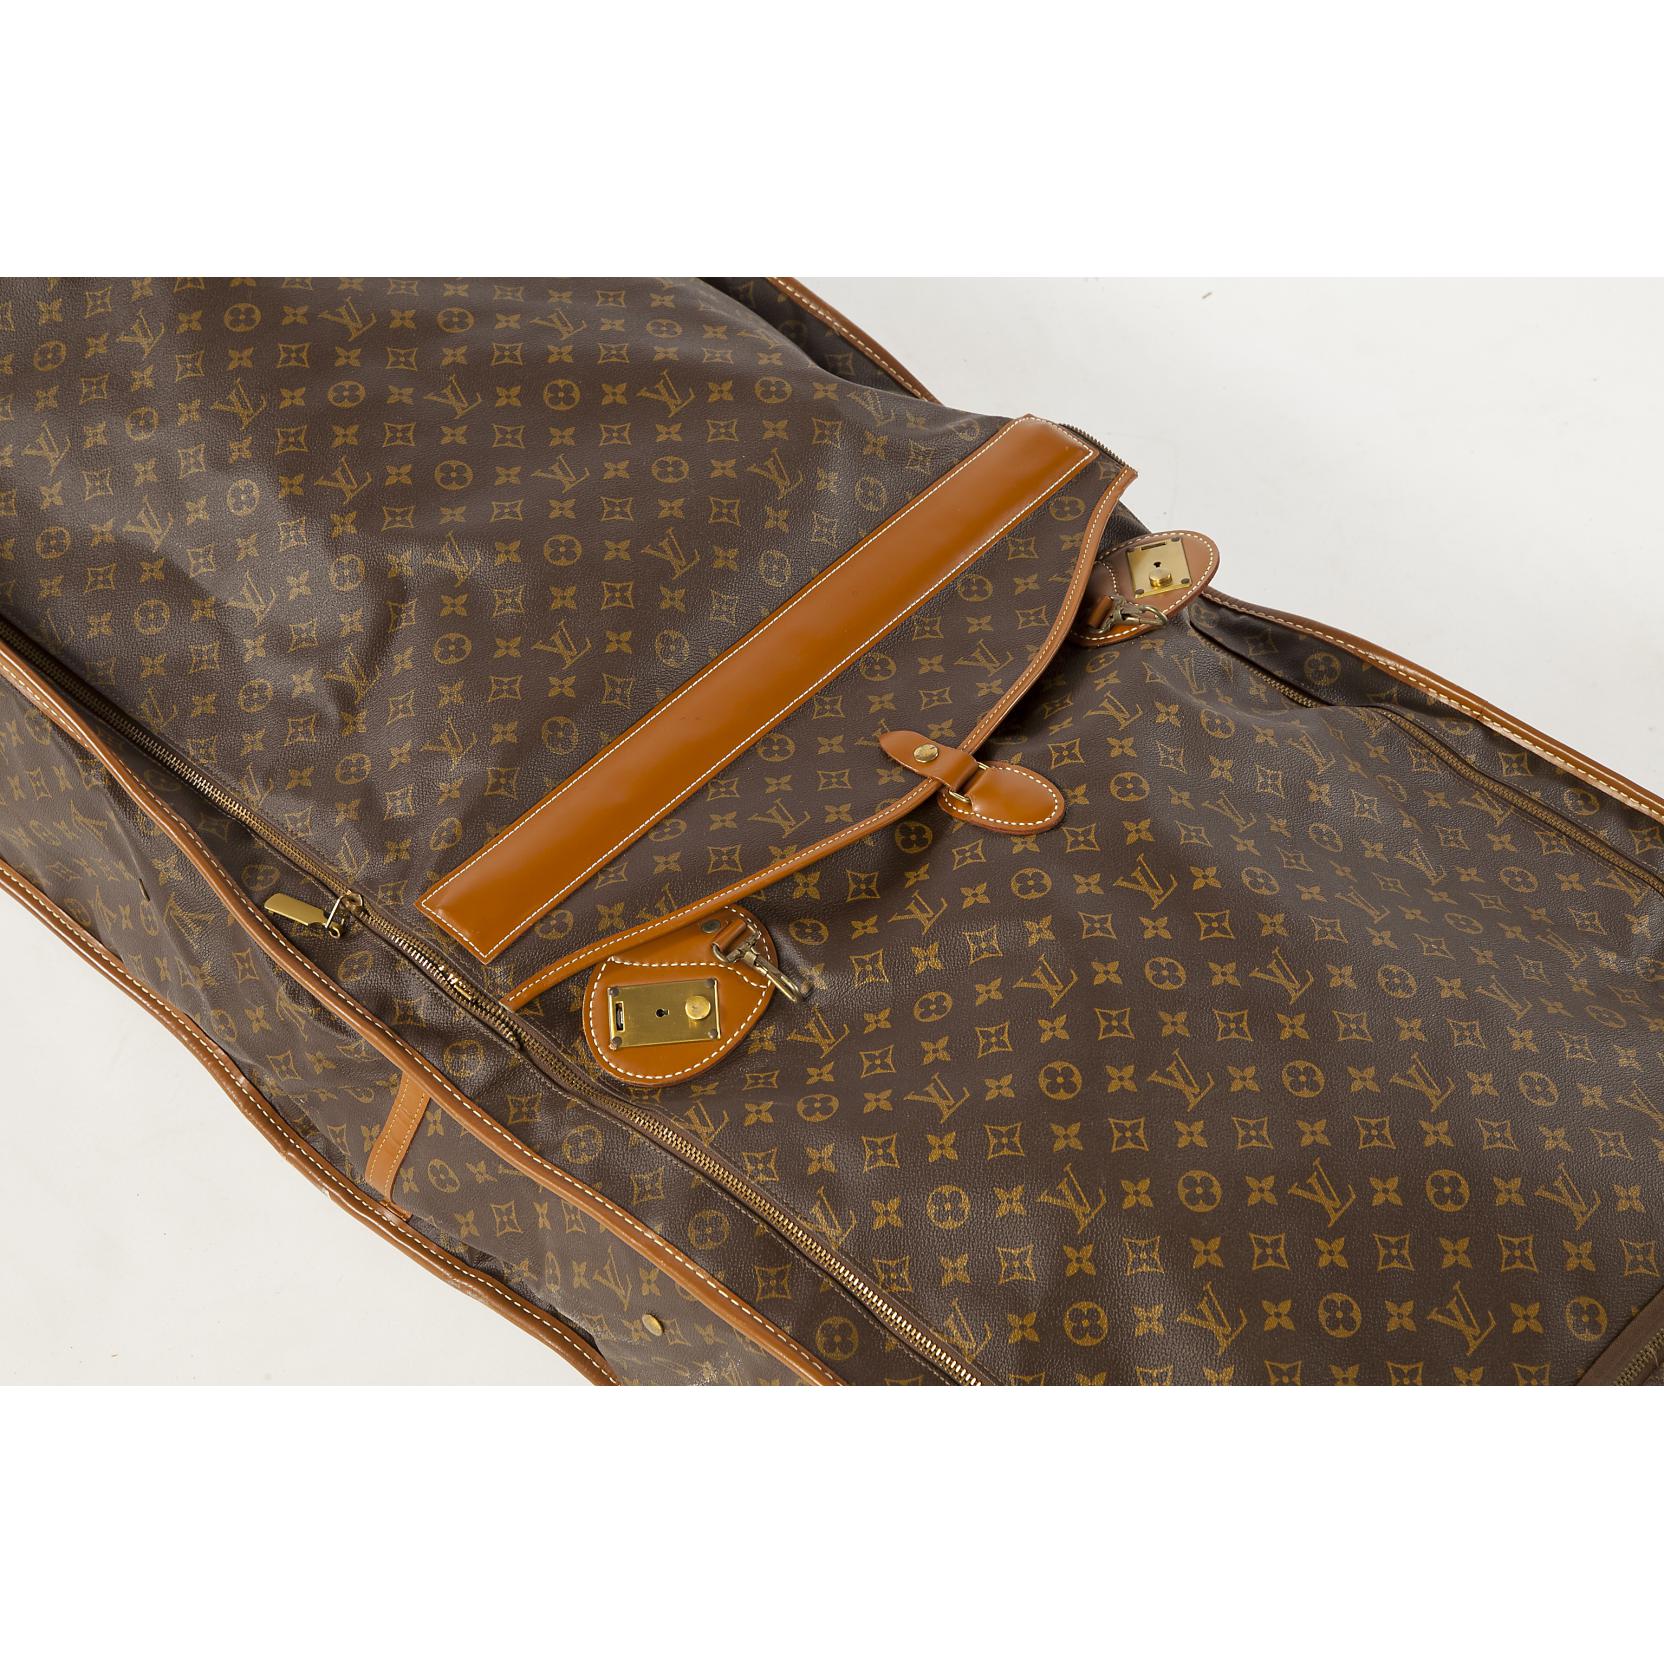 Vintage Louis Vuitton Large Folding Garment Bag (saks